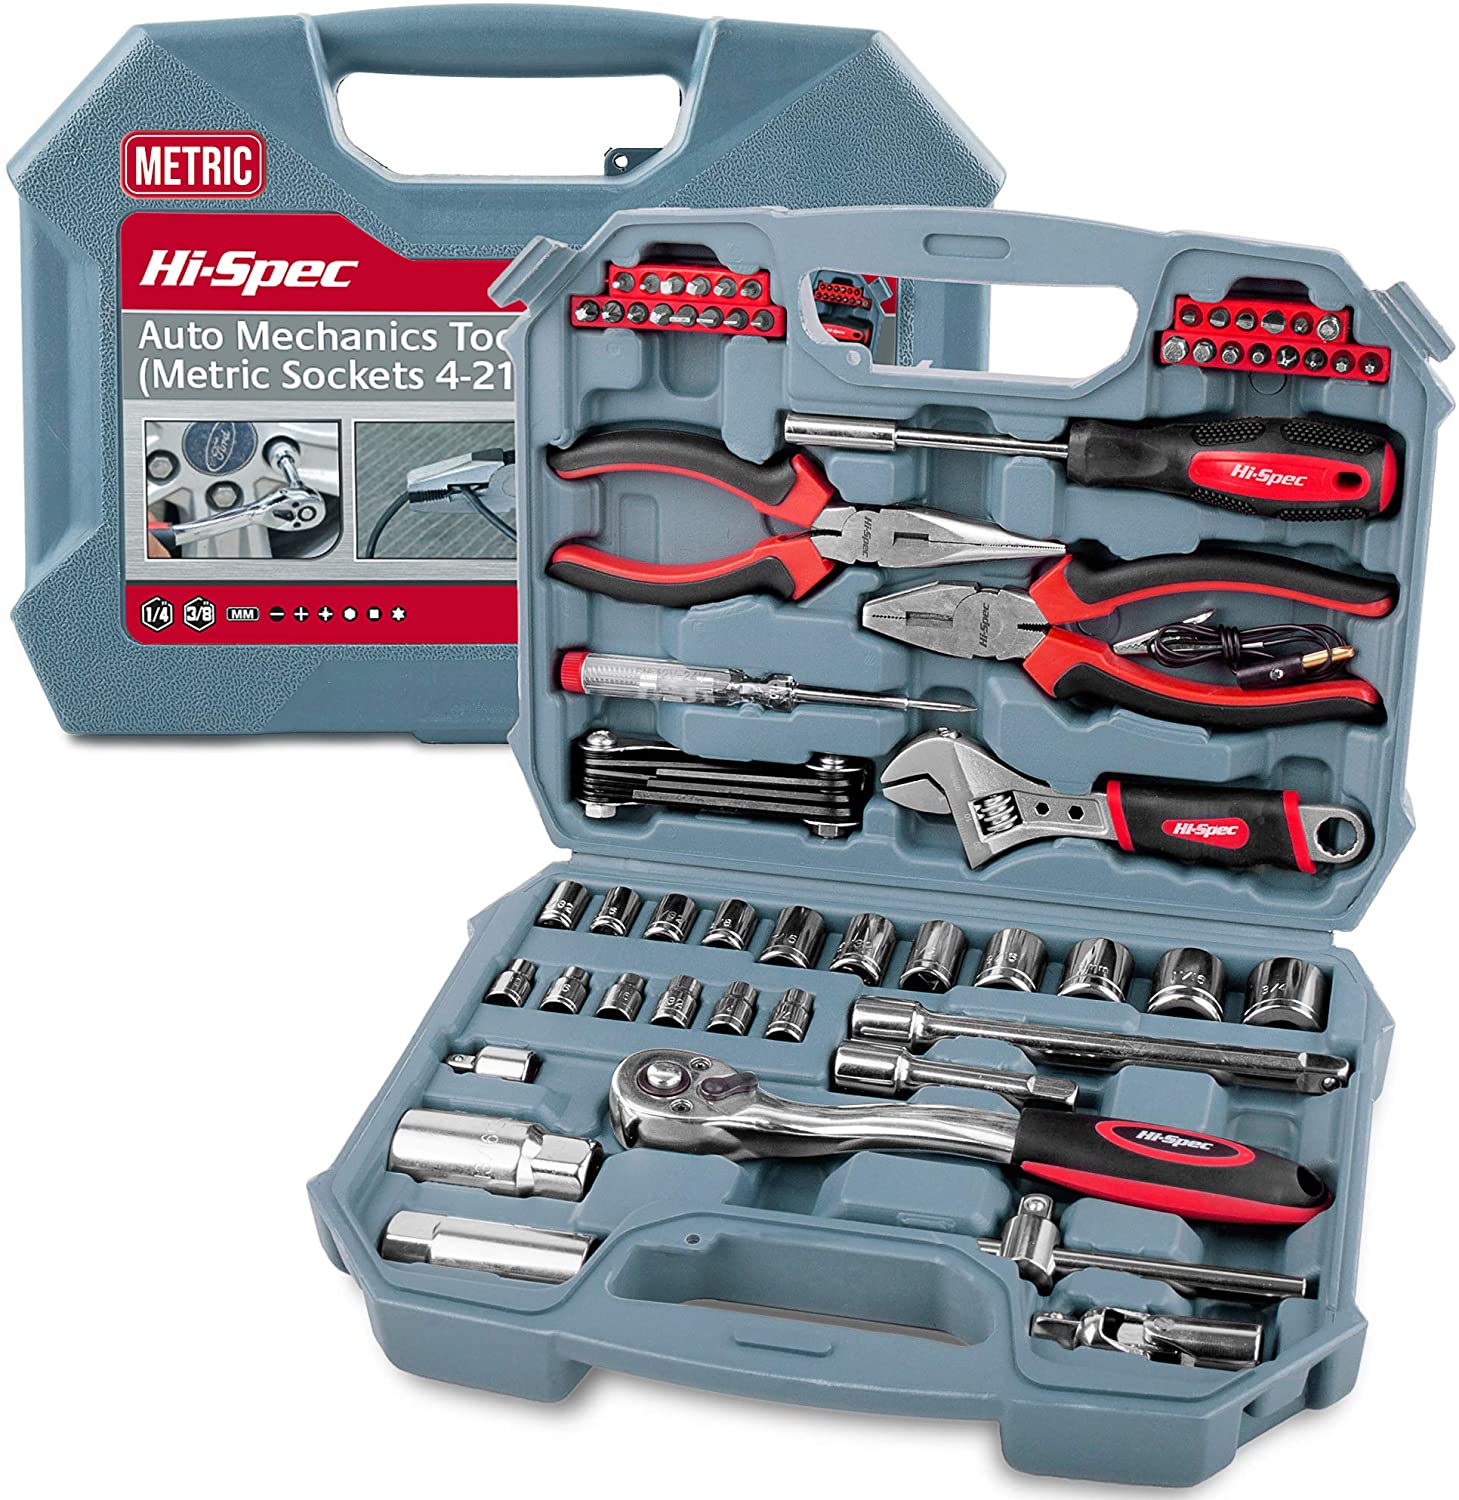 Hi-Spec Auto Mechanics Tool Set, 67-Piece